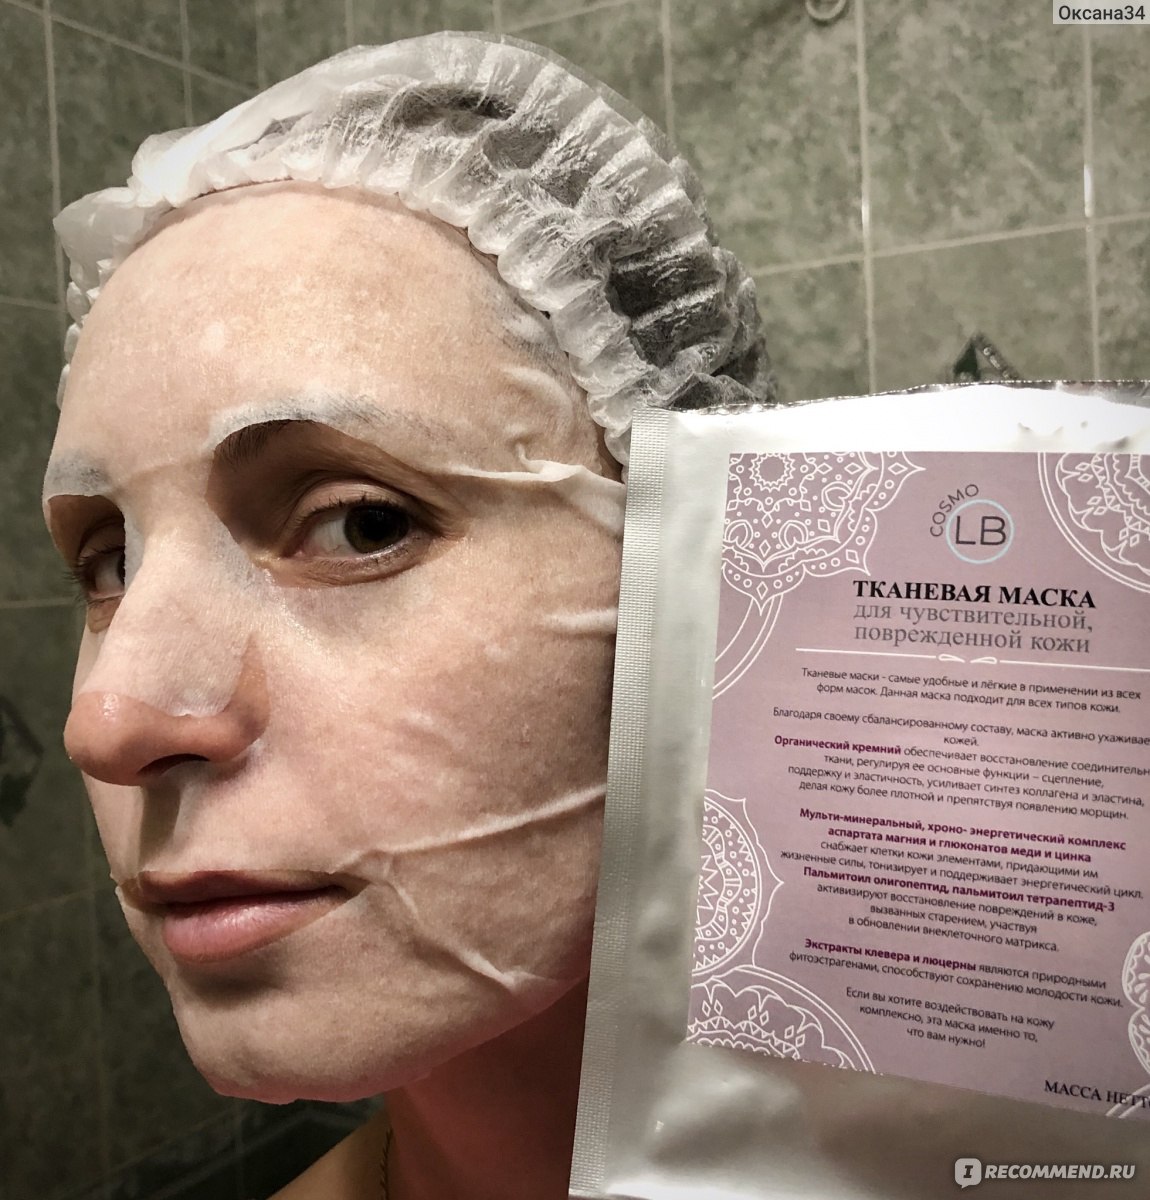 Тканевая маска для лица Cosmo-larabar Для чувствительной, повреждённой кожи отзывы